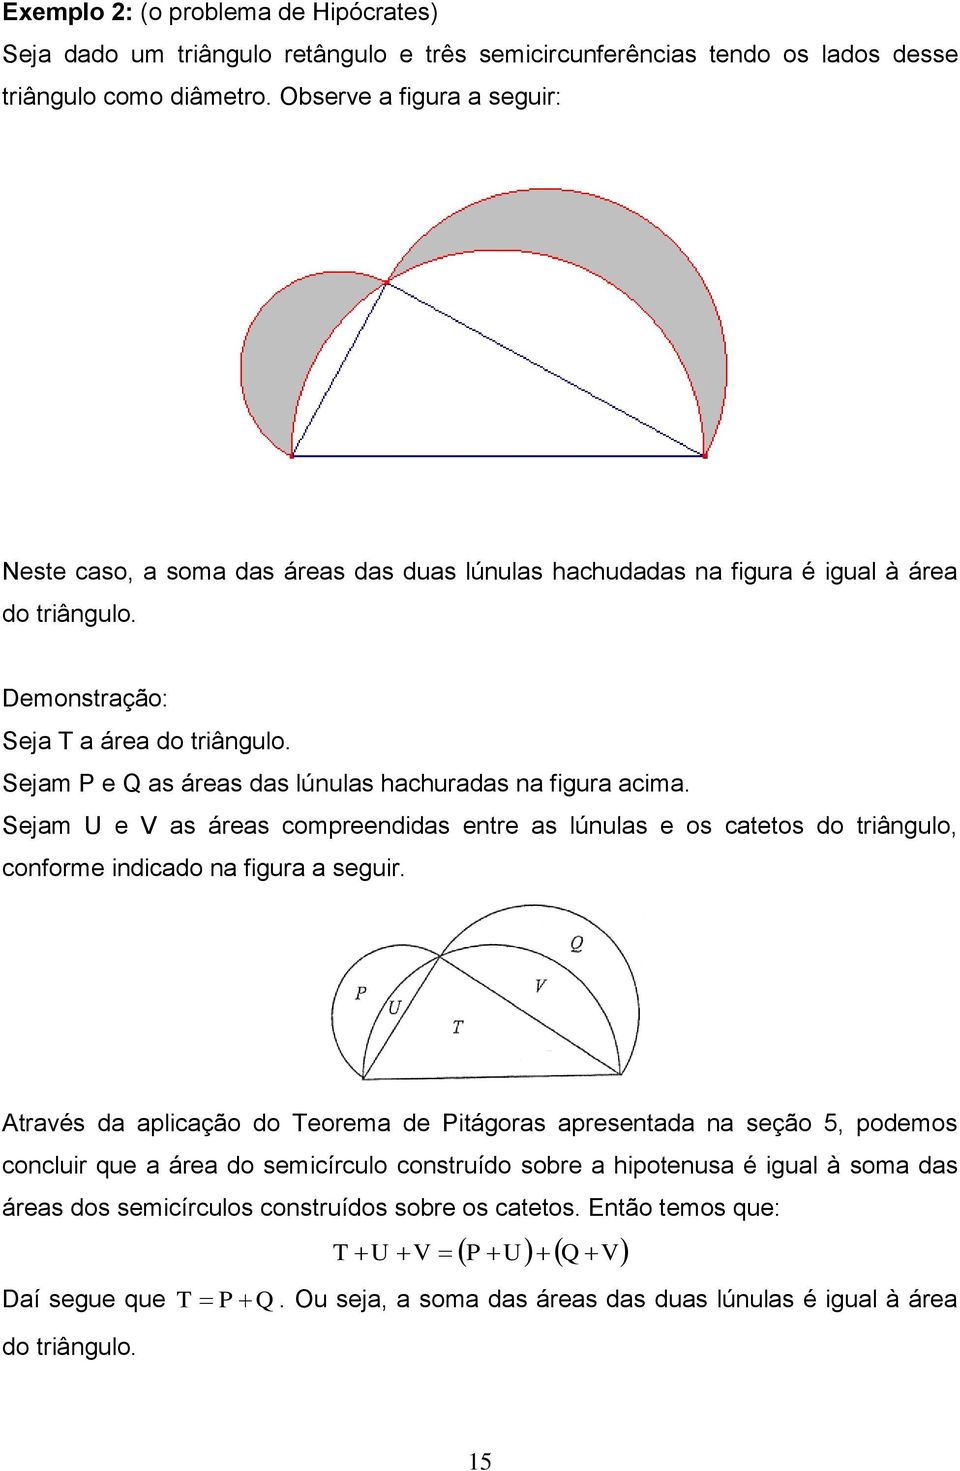 Sejam P e Q as áreas das lúnulas hachuradas na figura acima. Sejam U e V as áreas compreendidas entre as lúnulas e os catetos do triângulo, conforme indicado na figura a seguir.